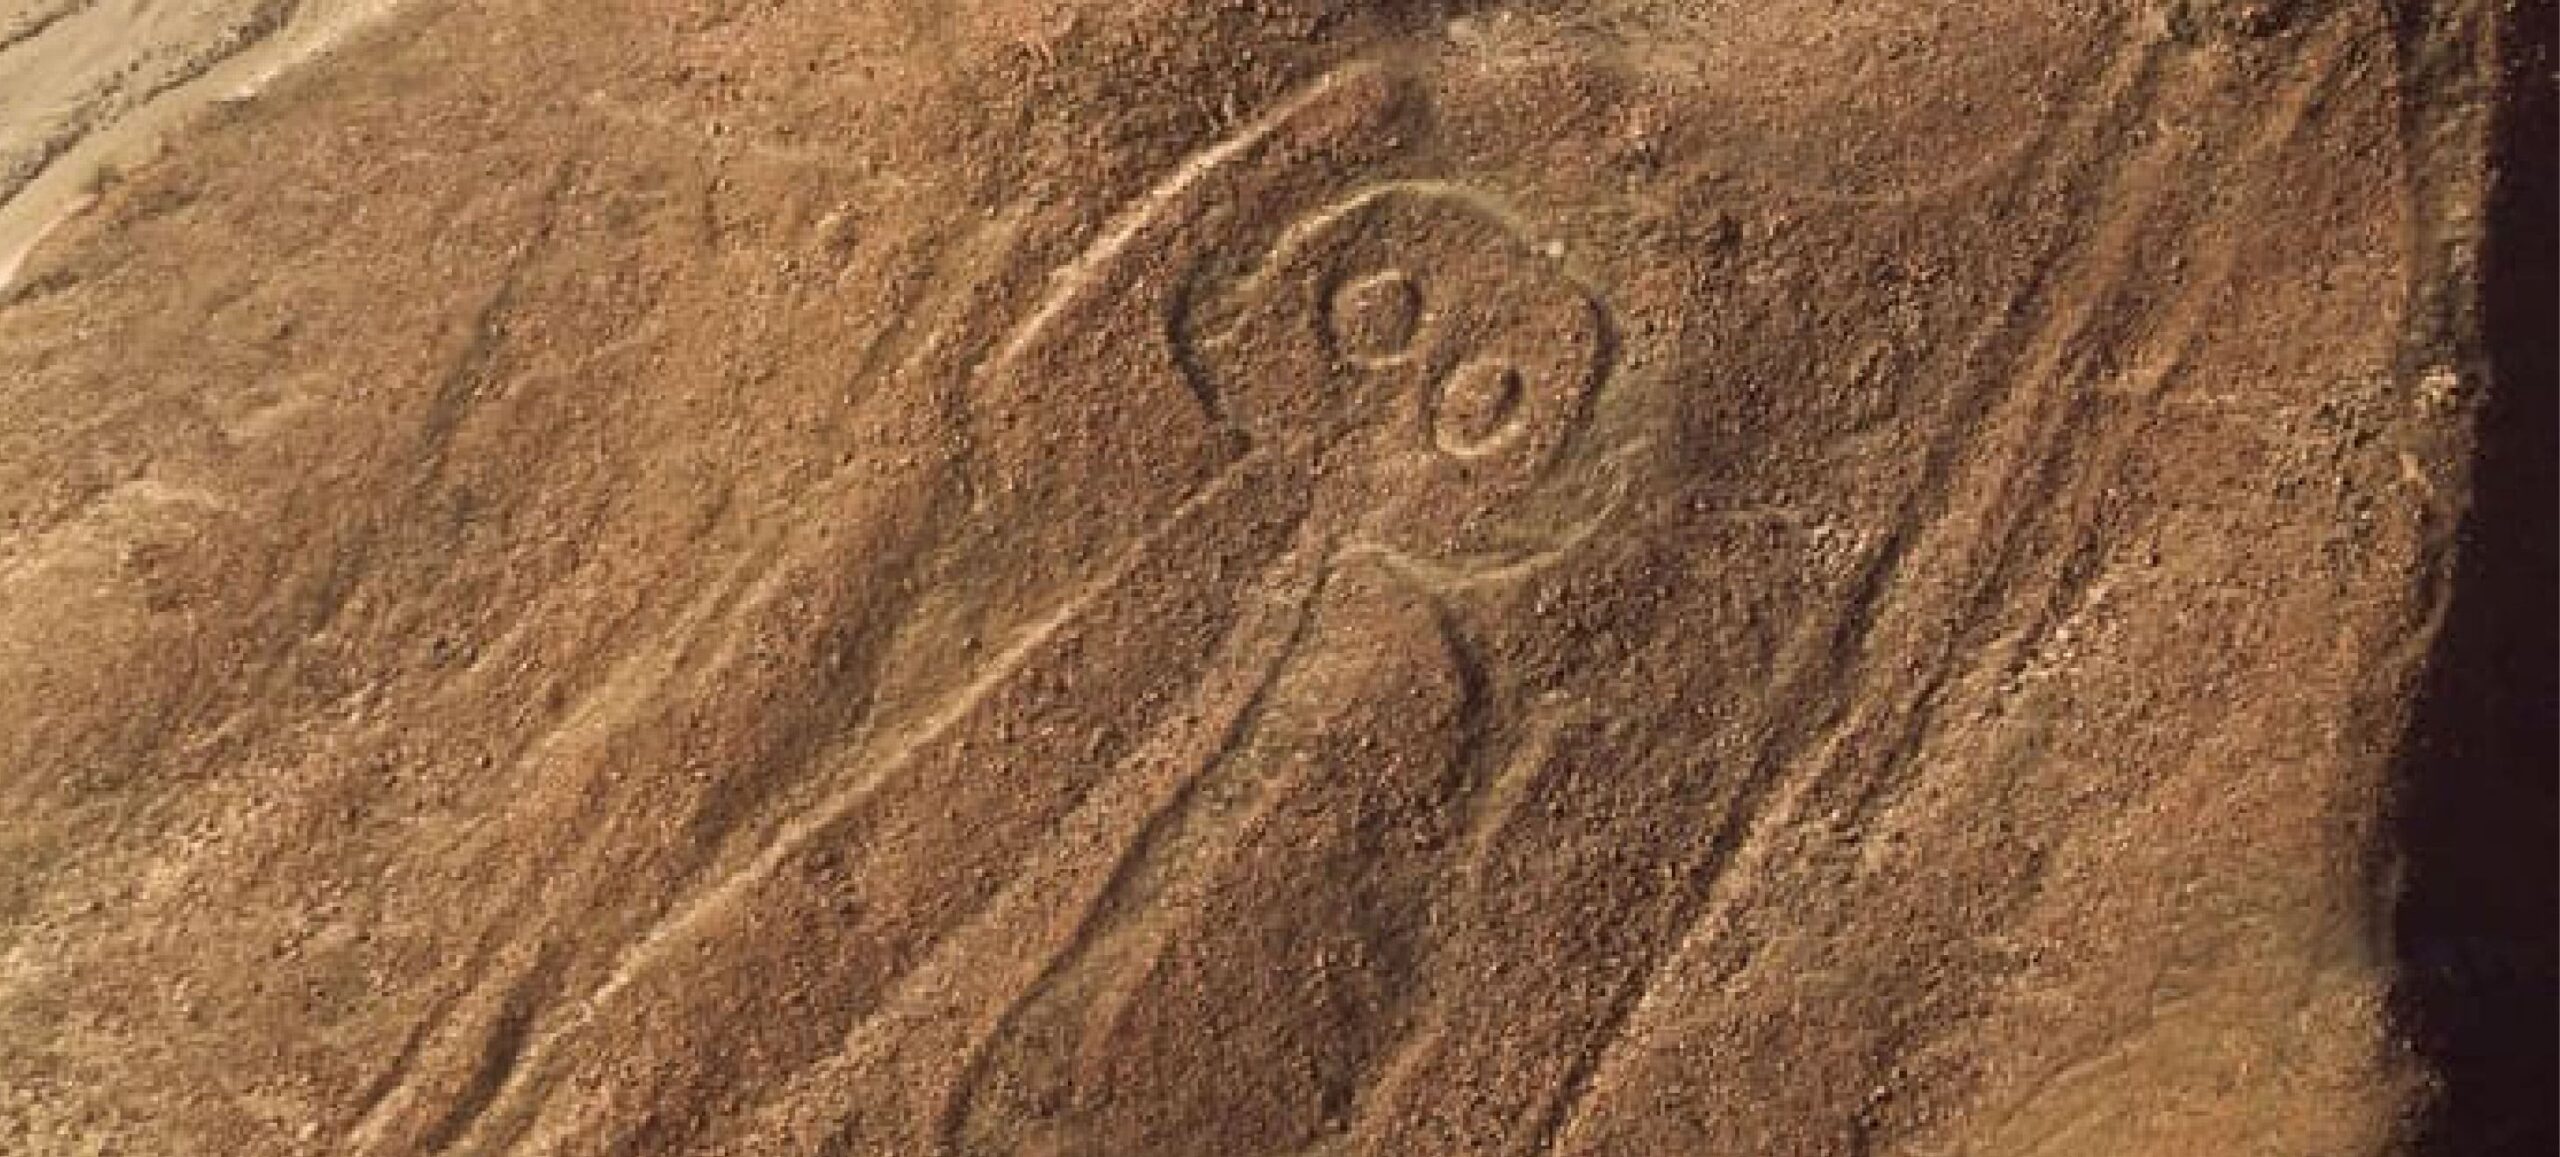 El misterio de las Líneas de Nazca en Ica, Perú